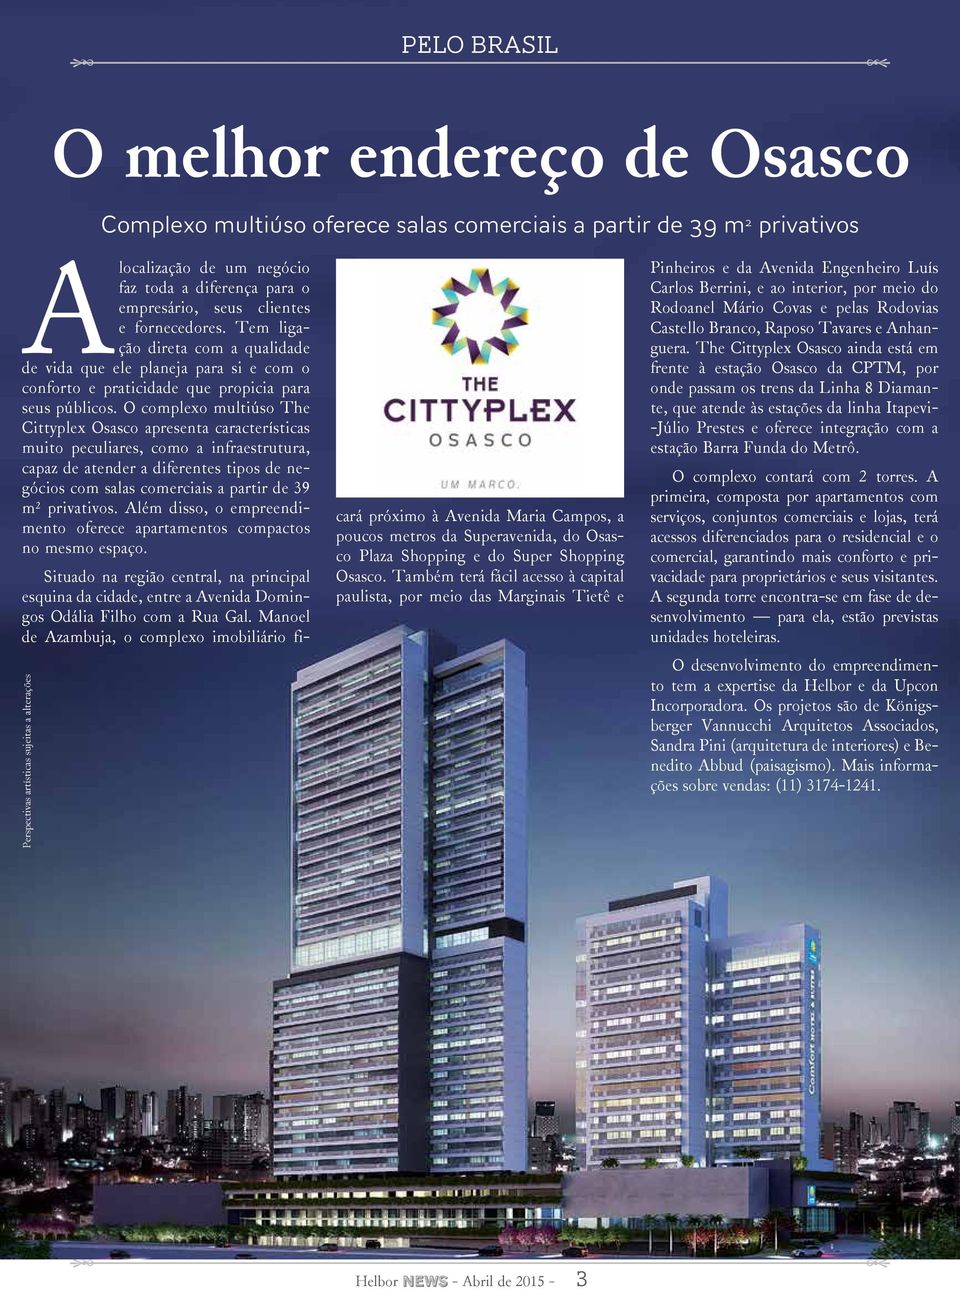 O complexo multiúso The Cittyplex Osasco apresenta características muito peculiares, como a infraestrutura, capaz de atender a diferentes tipos de negócios com salas comerciais a partir de 39 m²